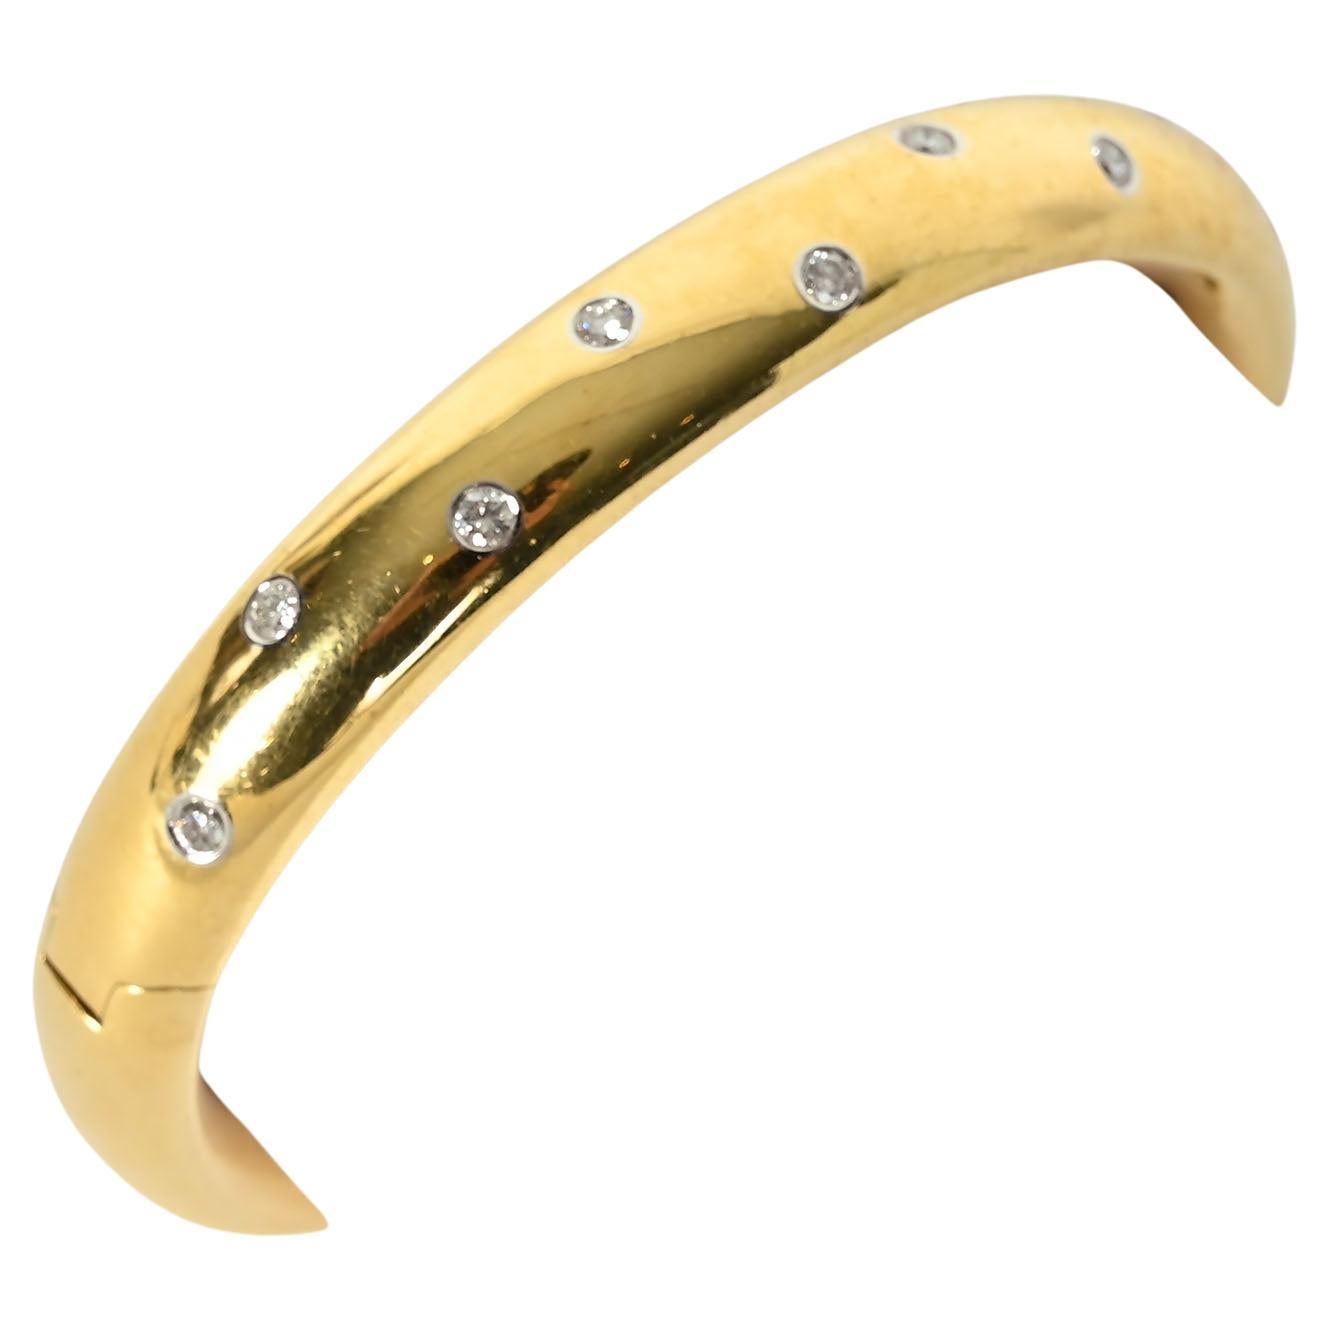 Tiffany & Co. Etoile Gold Bangle Bracelet with Diamonds